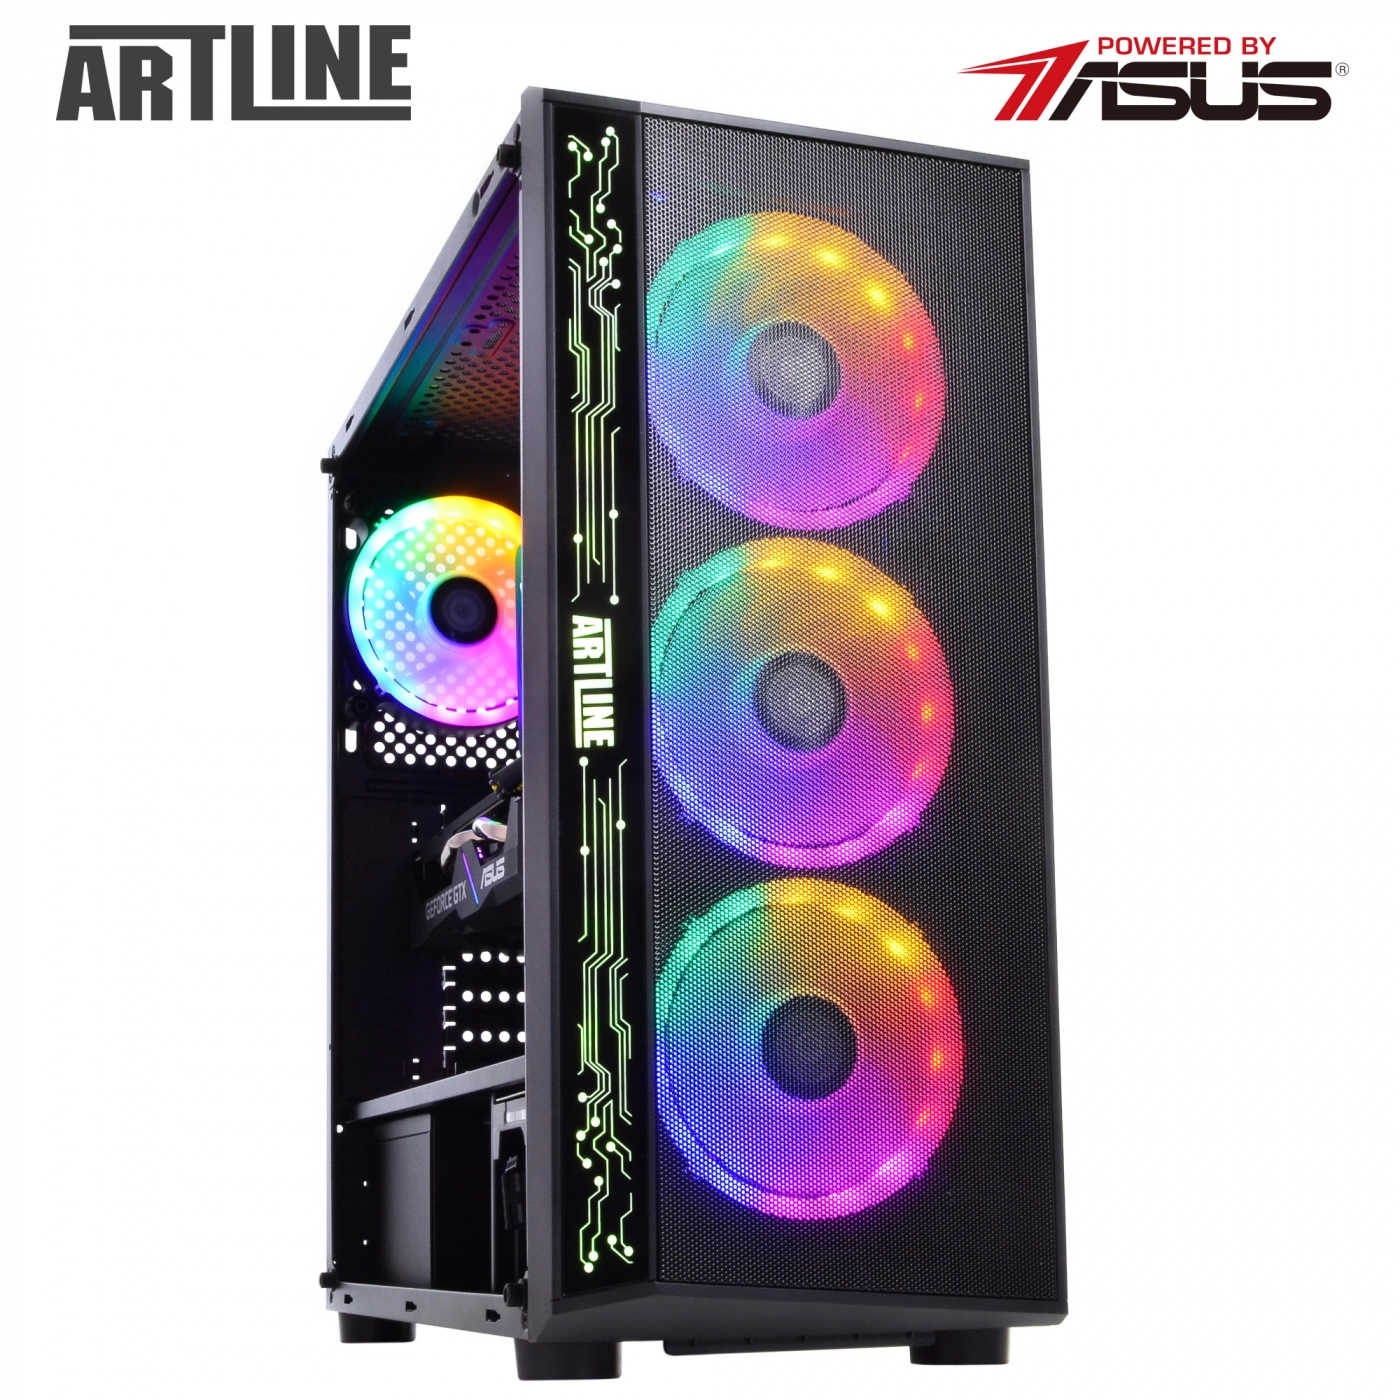 Купить Компьютер ARTLINE Gaming X37v31 - фото 10